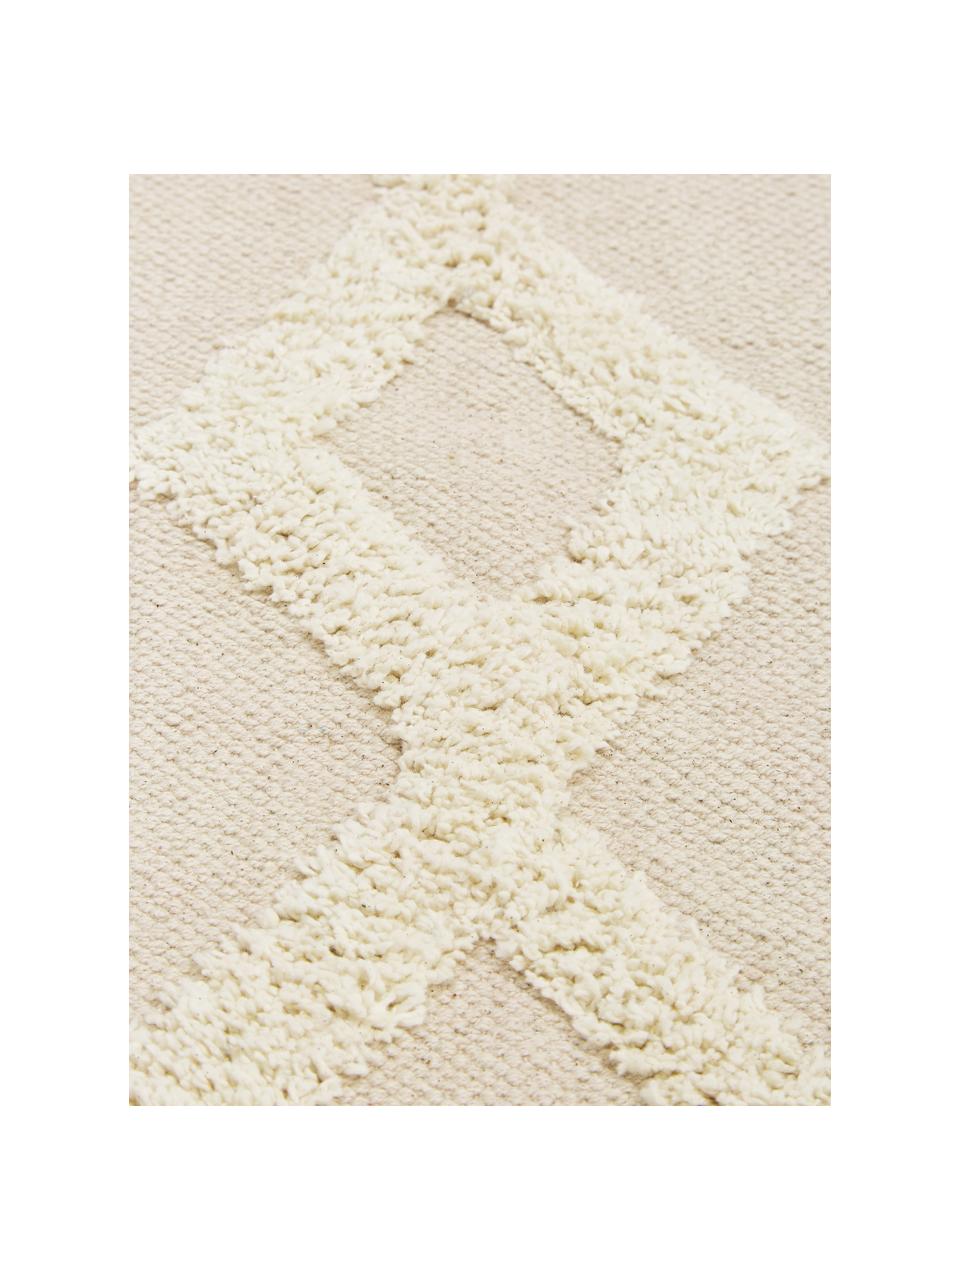 Teppich Canvas mit getufteter Verzierung, 100% Baumwolle, Gebrochenes Weiß, B 200 x L 300 cm (Größe L)